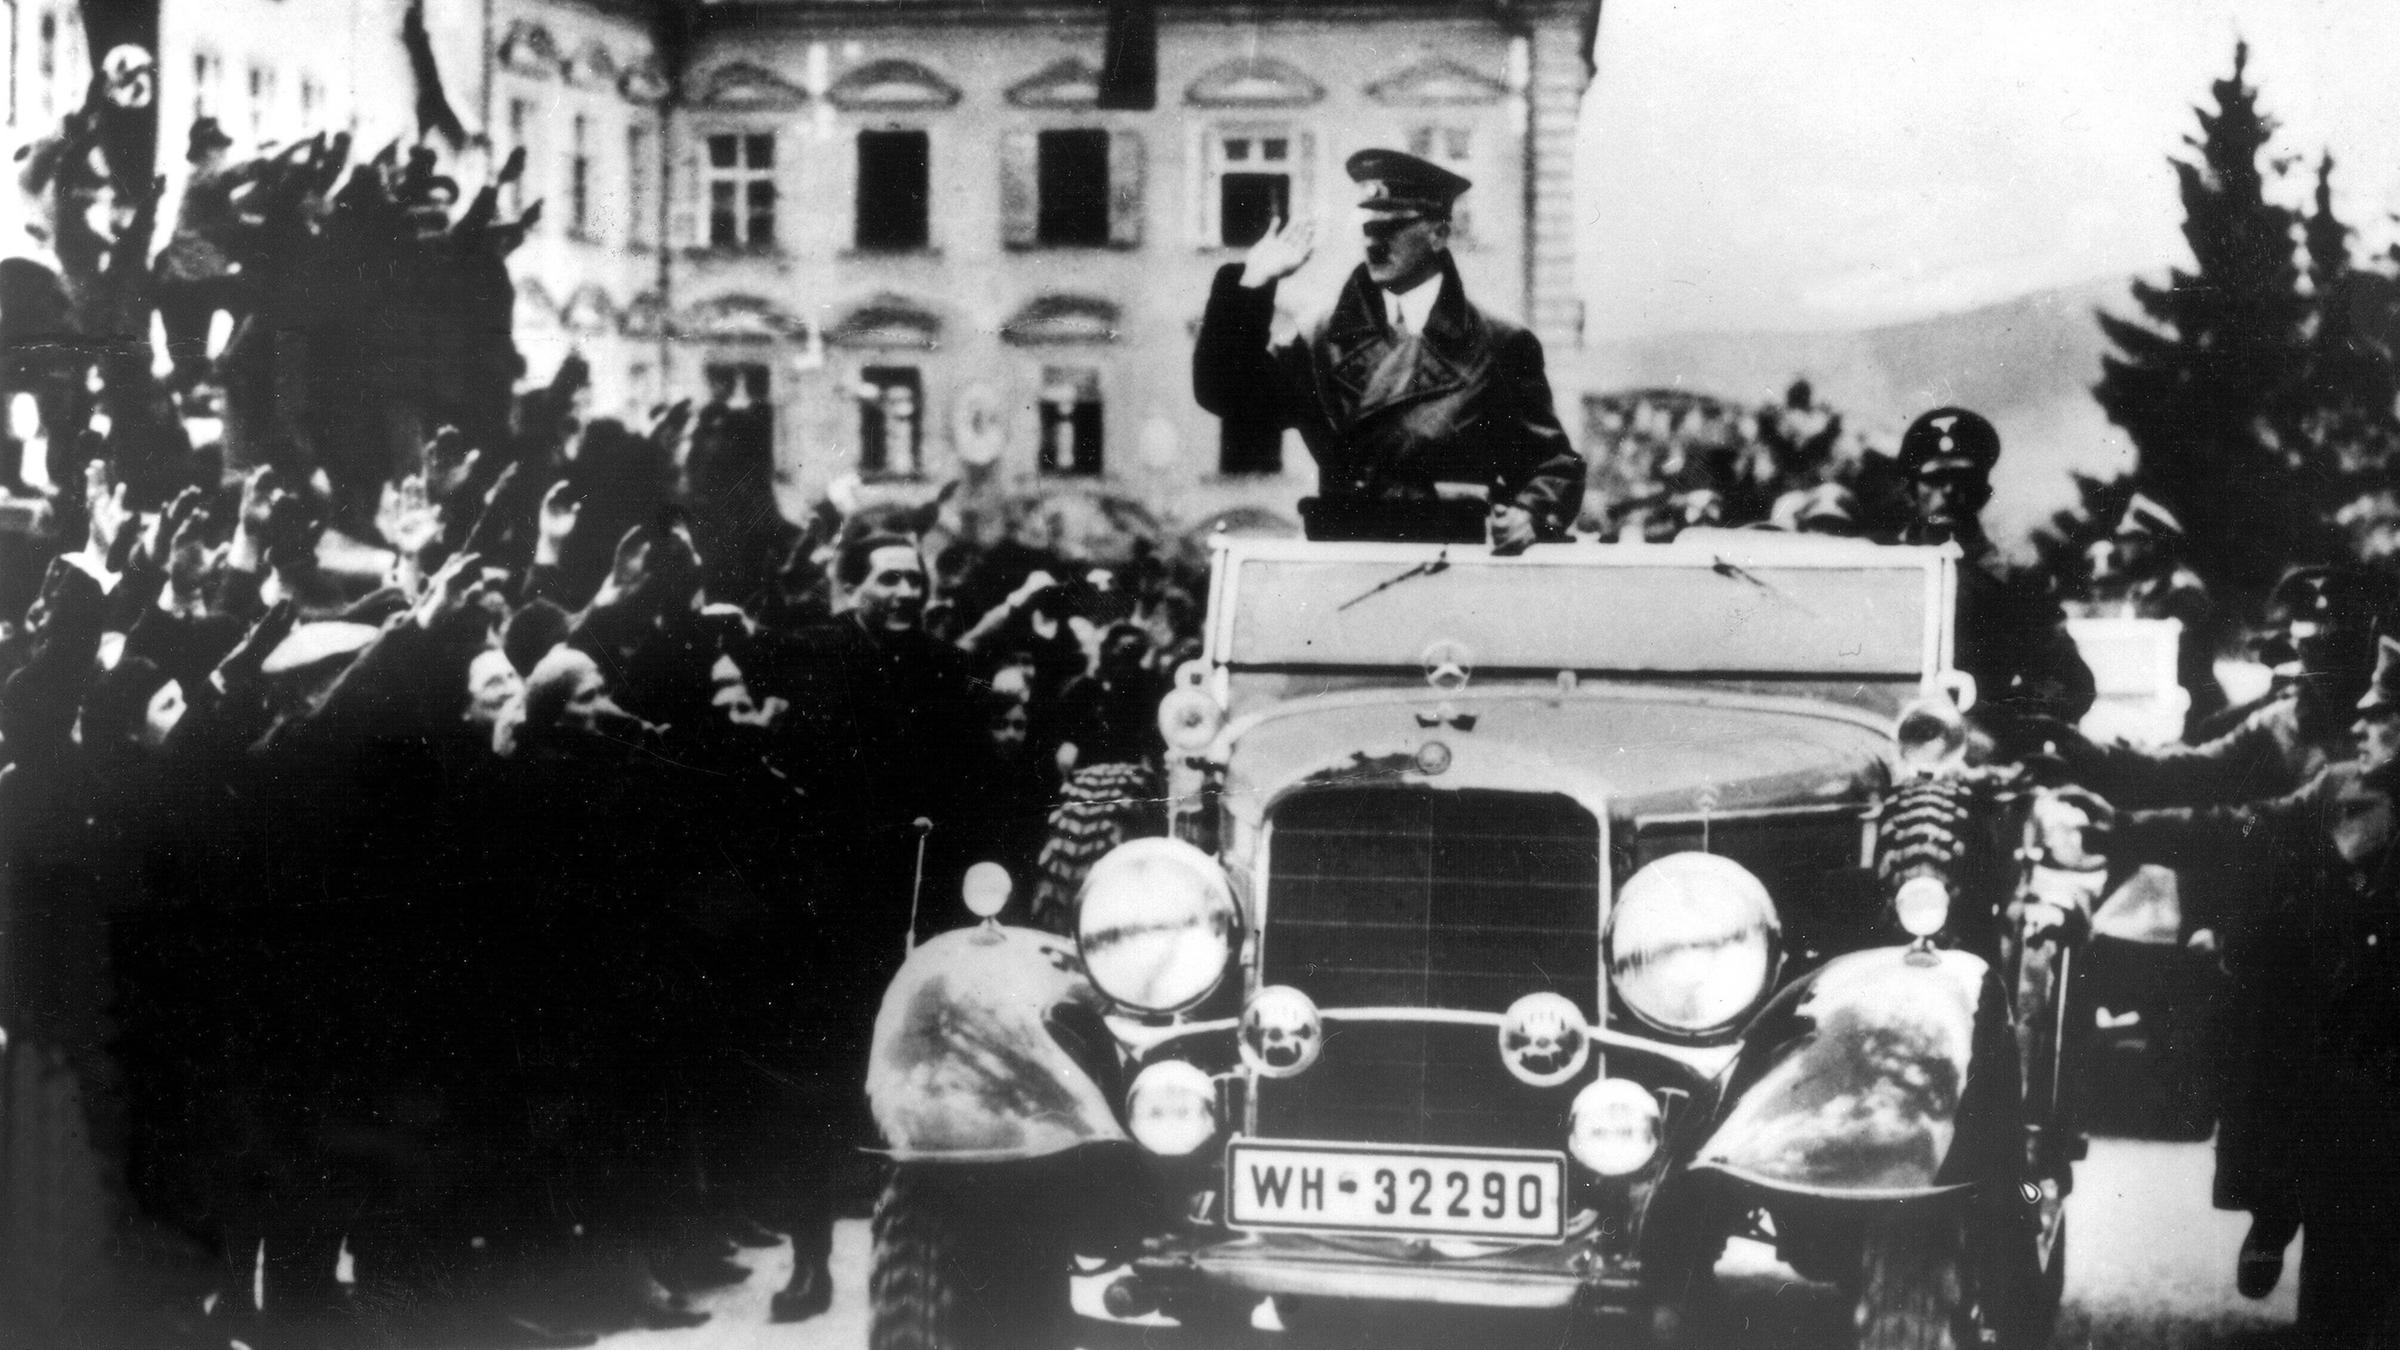 Historische schwarz-weiß-Aufnahme zeigt Adolf Hitler im offenen Fahrzeug bei der Fahrt durch eine Menschenmenge in Linz 1938.